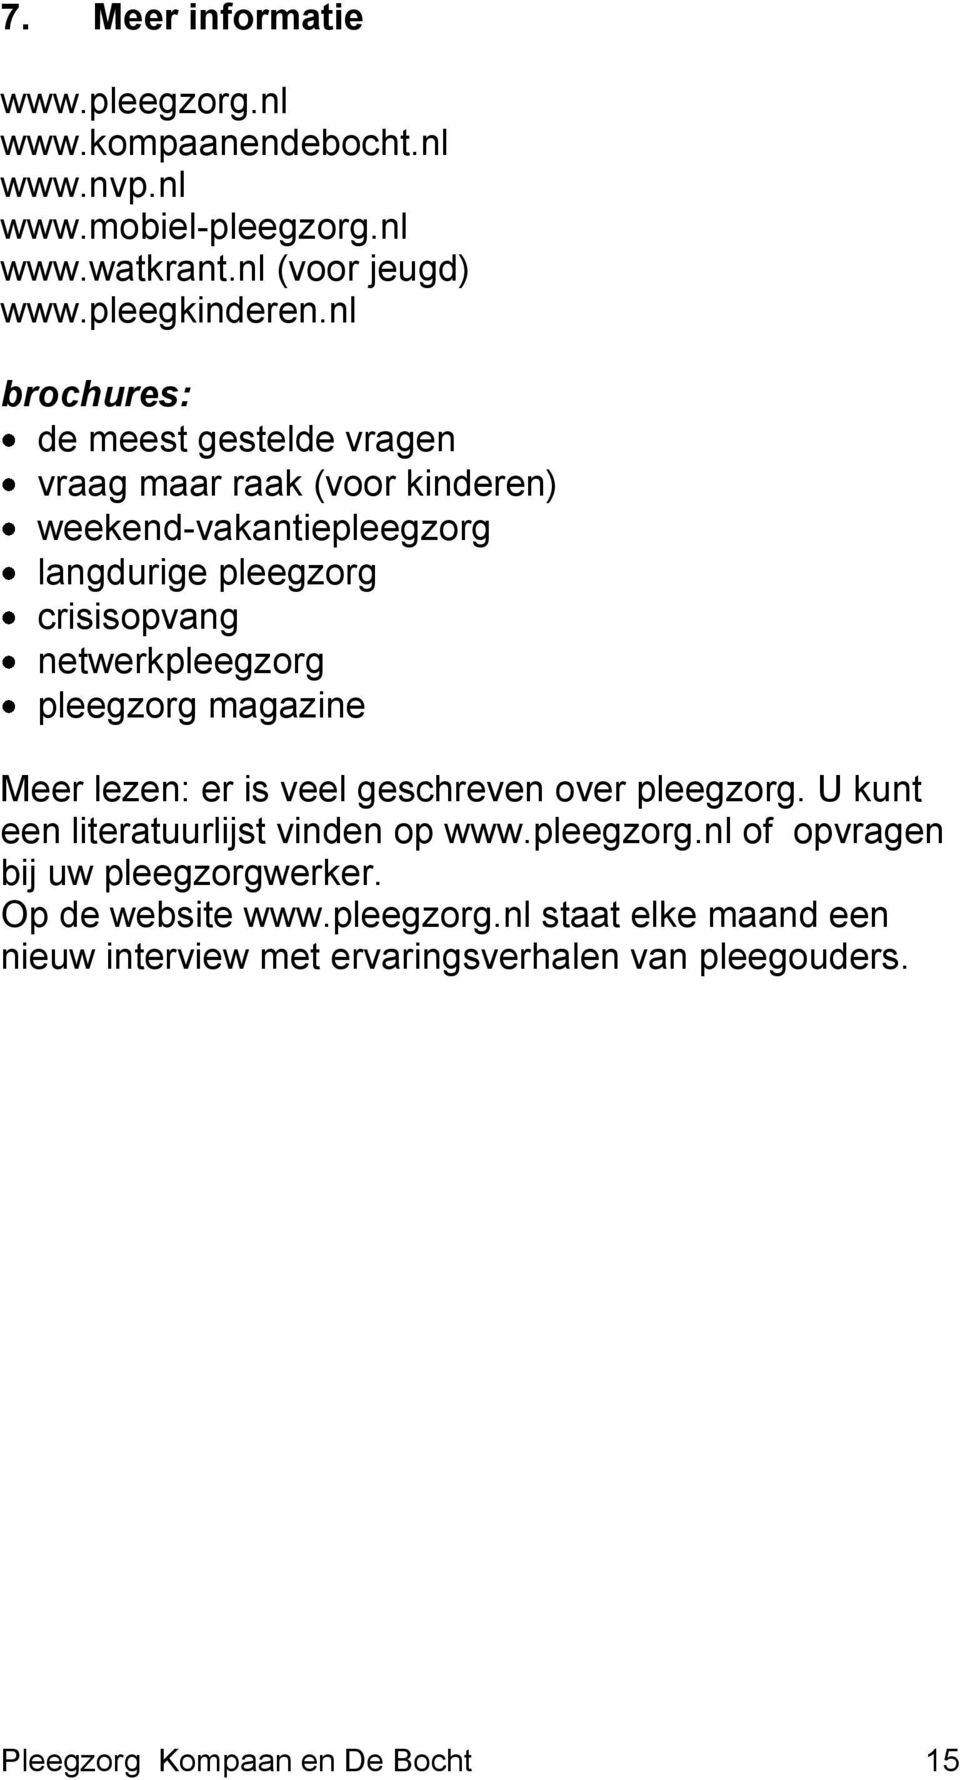 netwerkpleegzorg pleegzorg magazine Meer lezen: er is veel geschreven over pleegzorg. U kunt een literatuurlijst vinden op www.pleegzorg.nl of opvragen bij uw pleegzorgwerker.